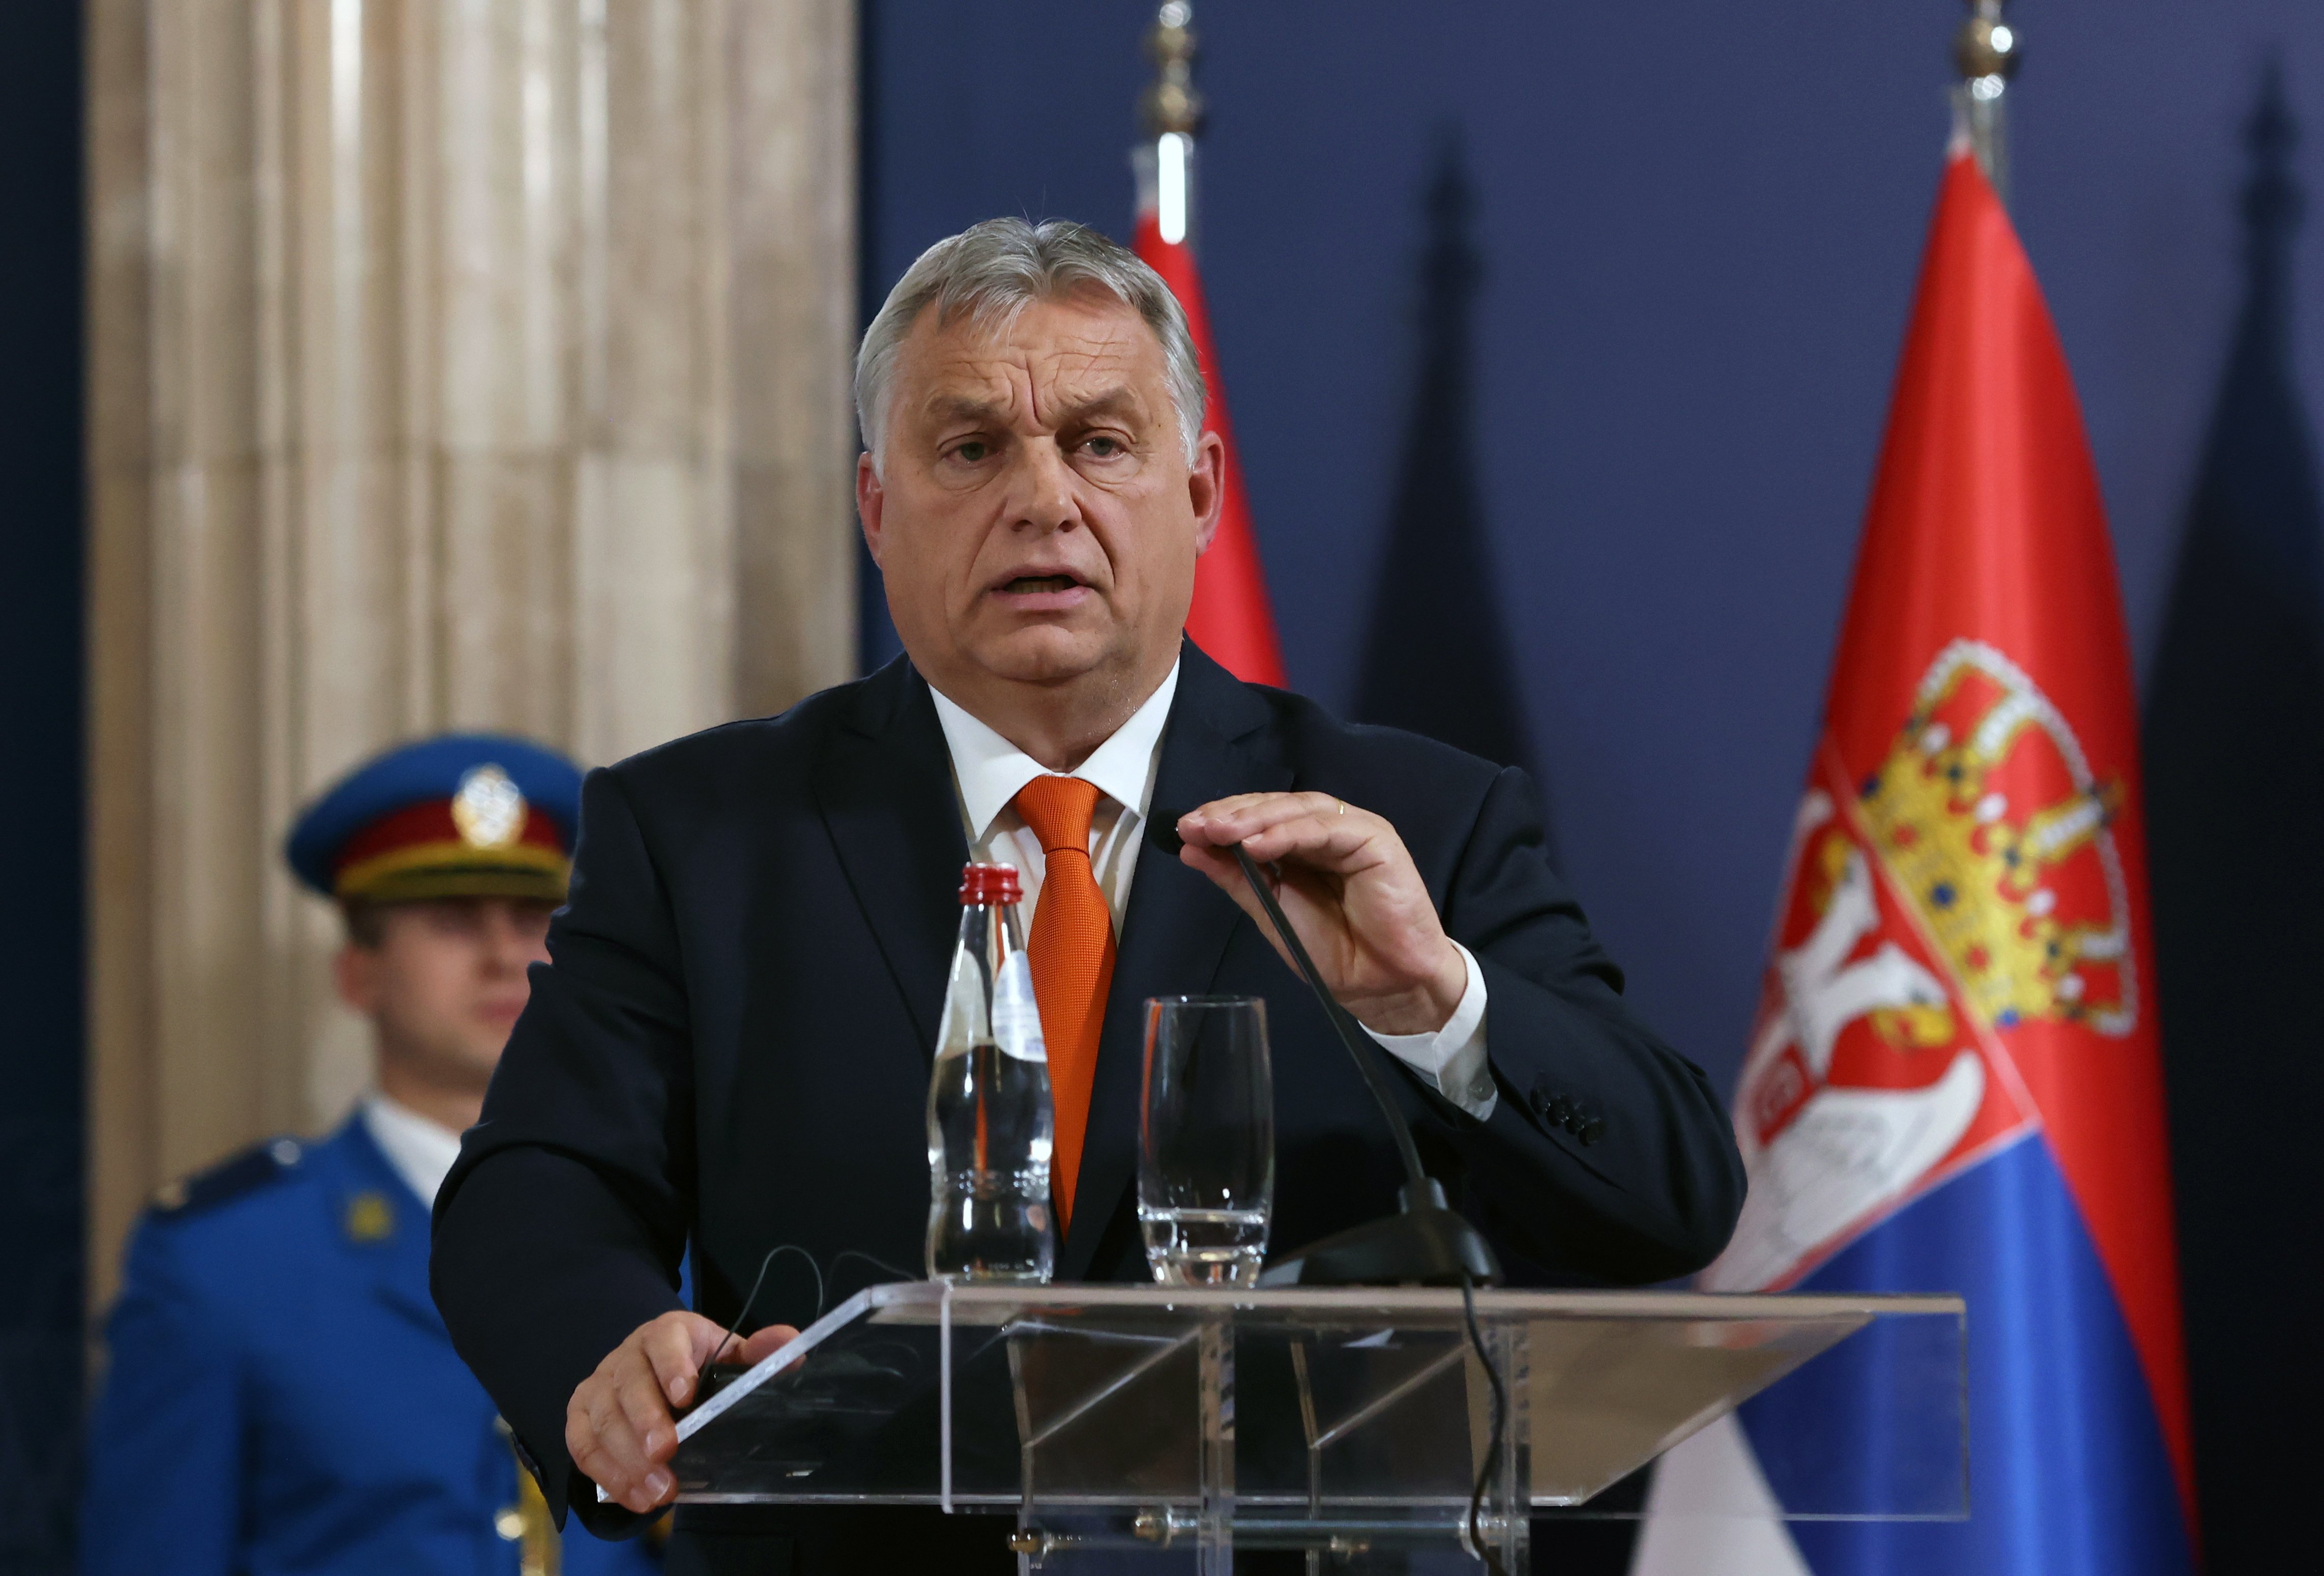 Kíiv exigeix disculpes per una polèmica bandera que ha ensenyat Viktor Orbán: què s'hi amaga?